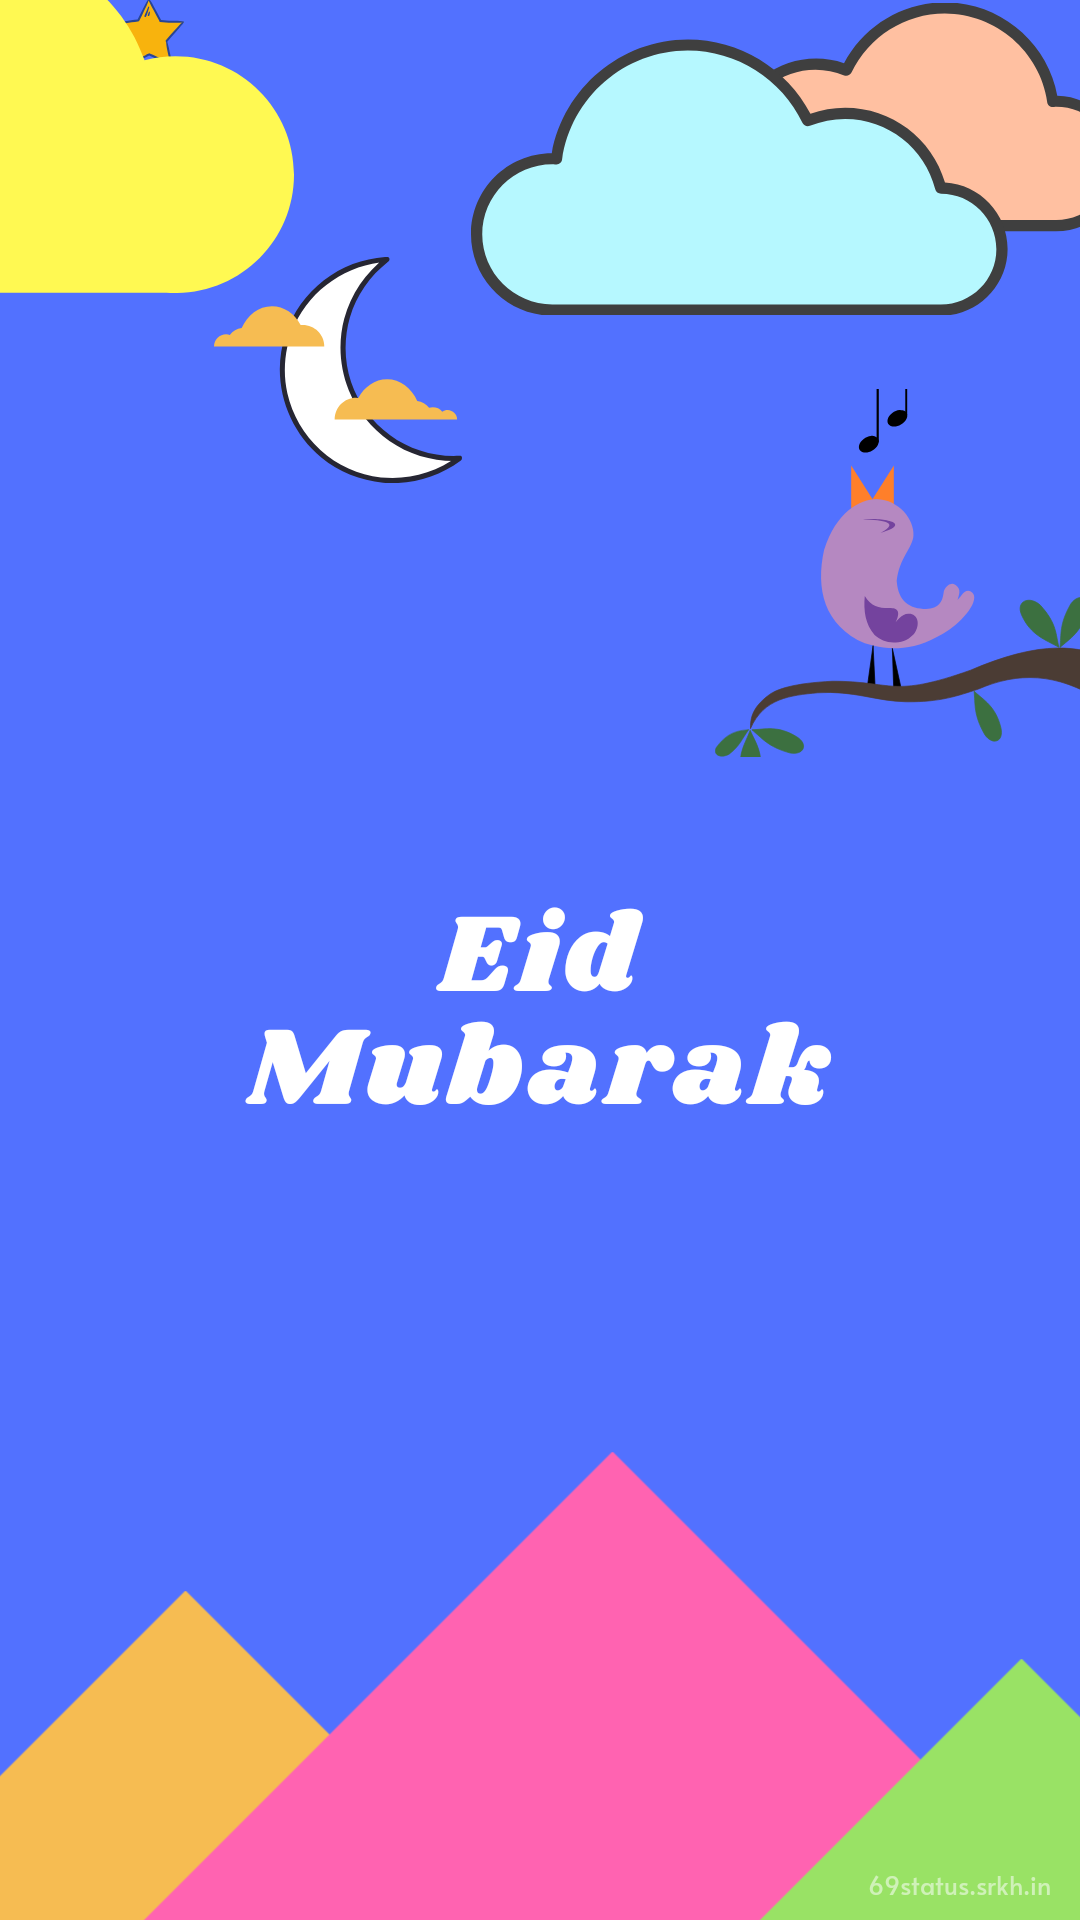 Eid Mubarak beautiful wallpaper hd